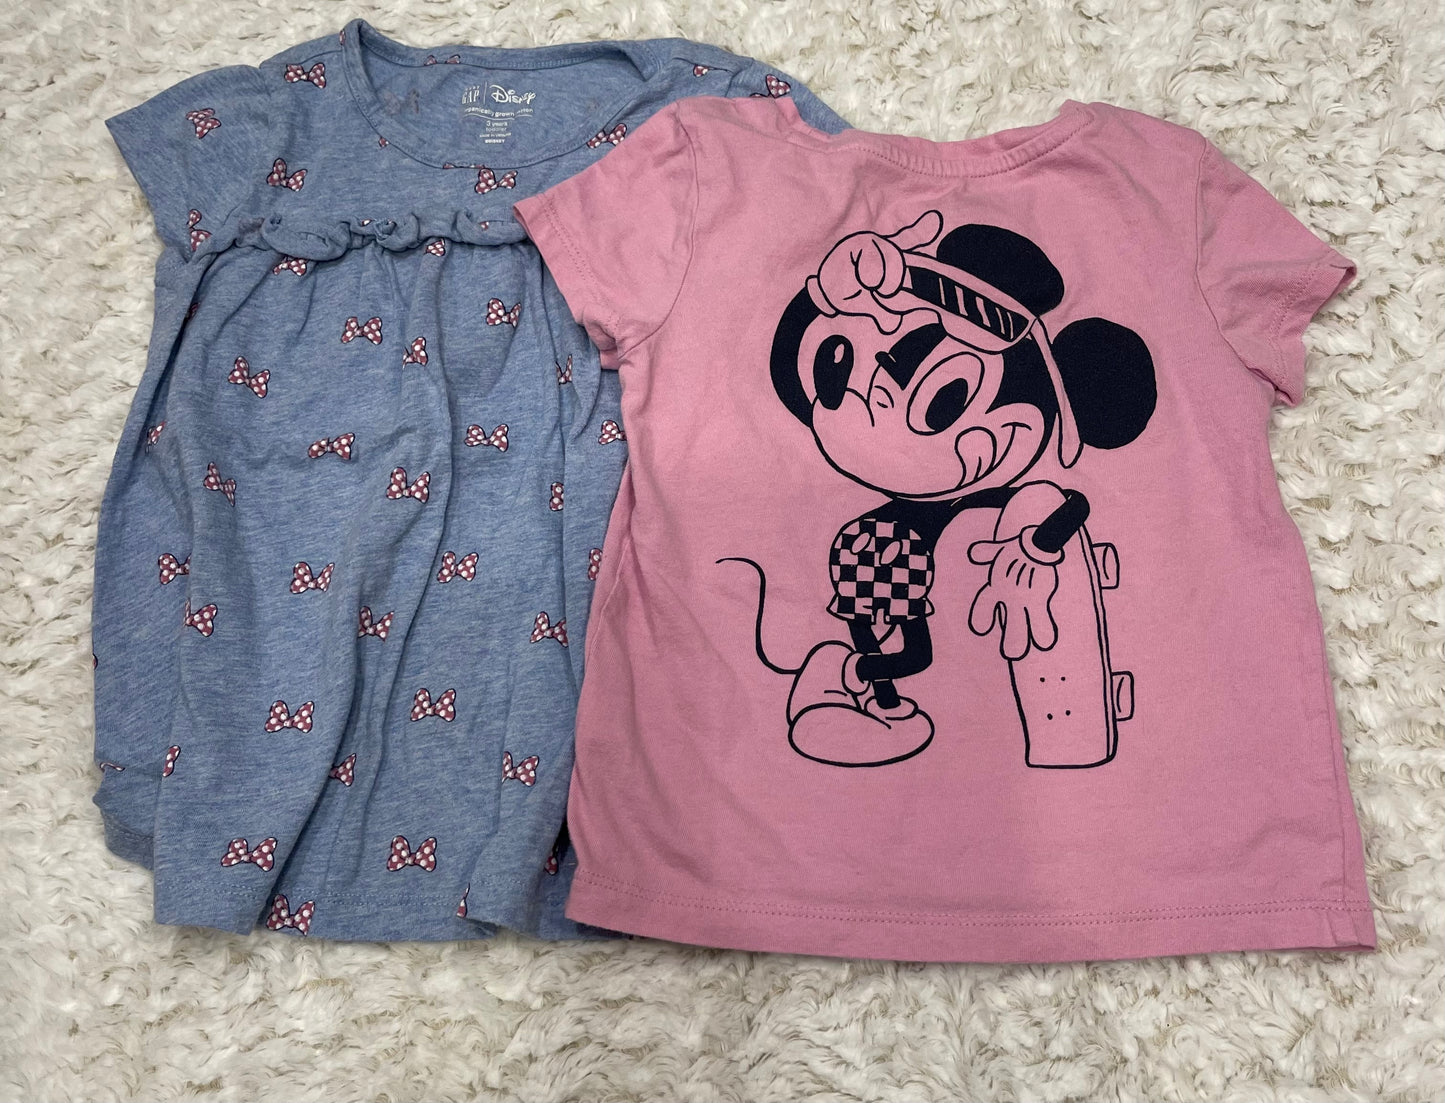 Gap 3T Minnie and Mickey shirts